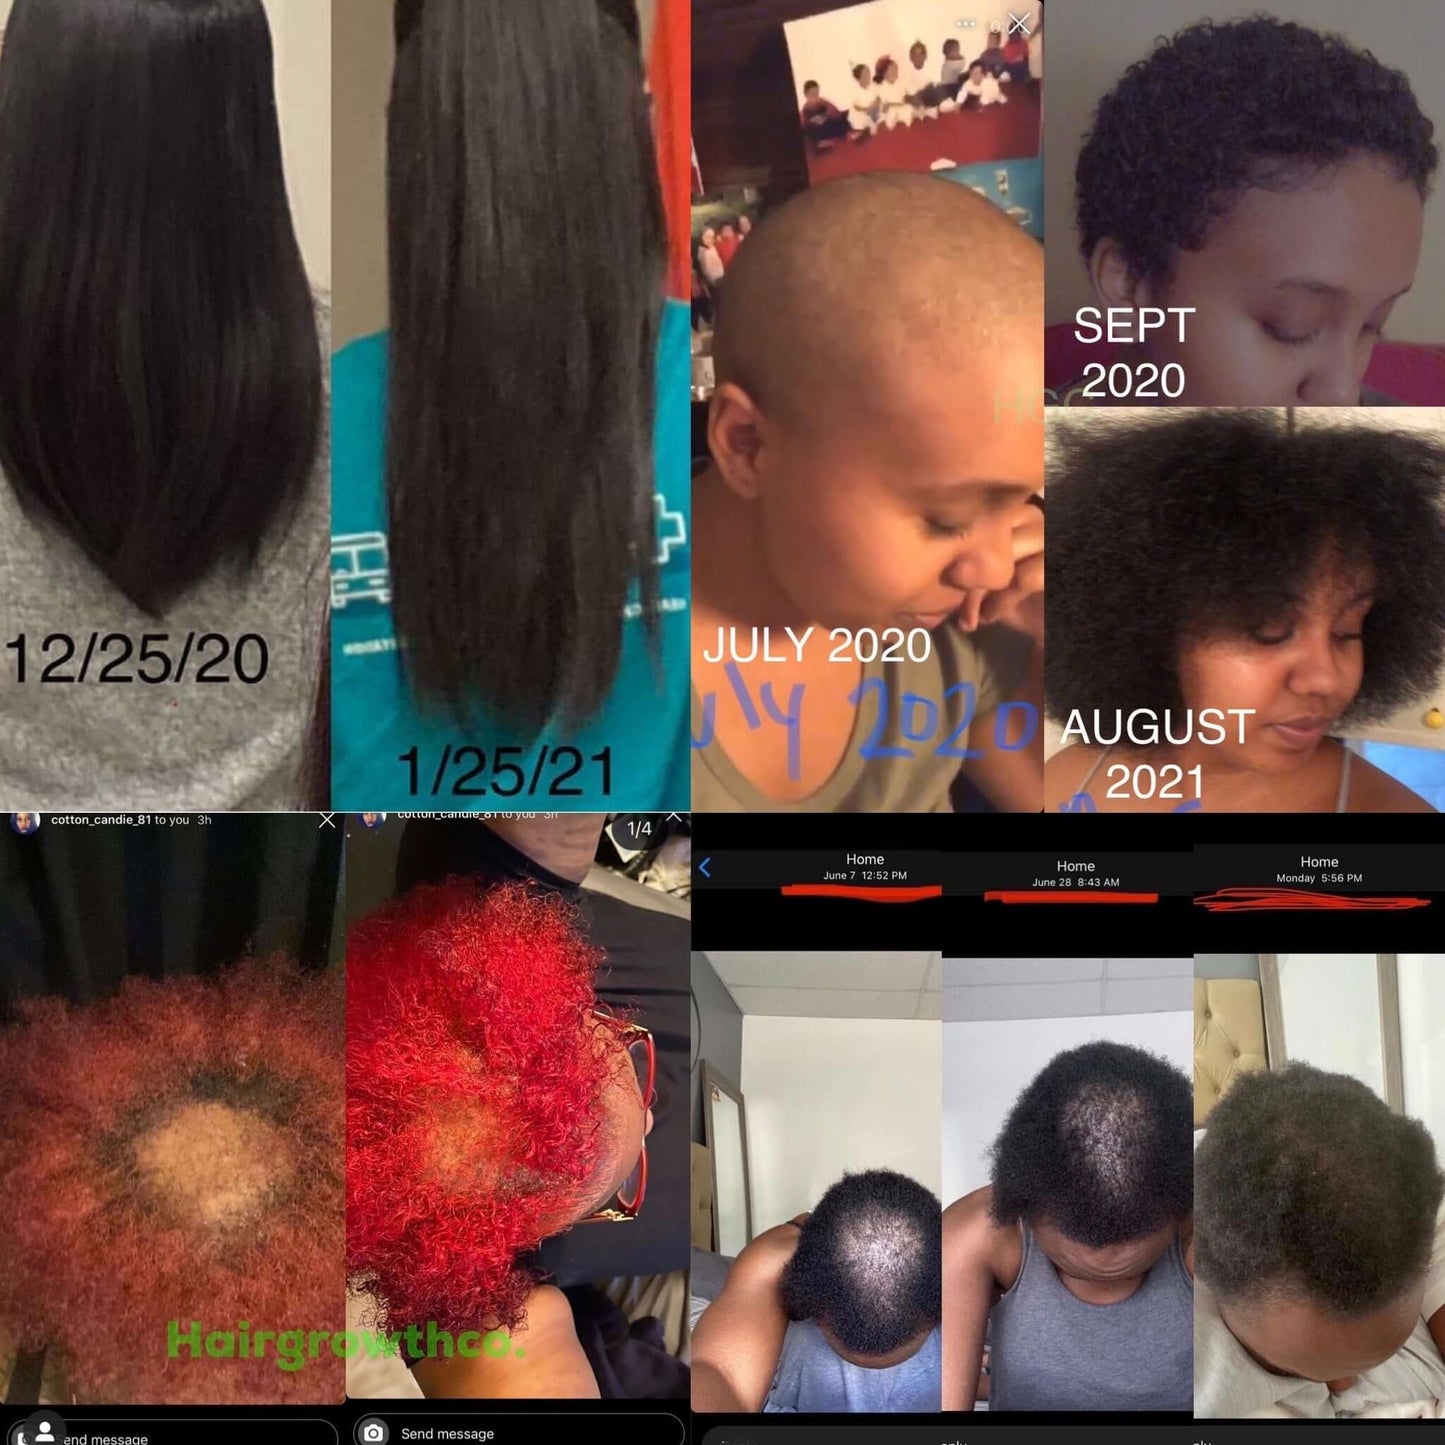 10 in 1 Hair Growth Oil - Hair Growth Co